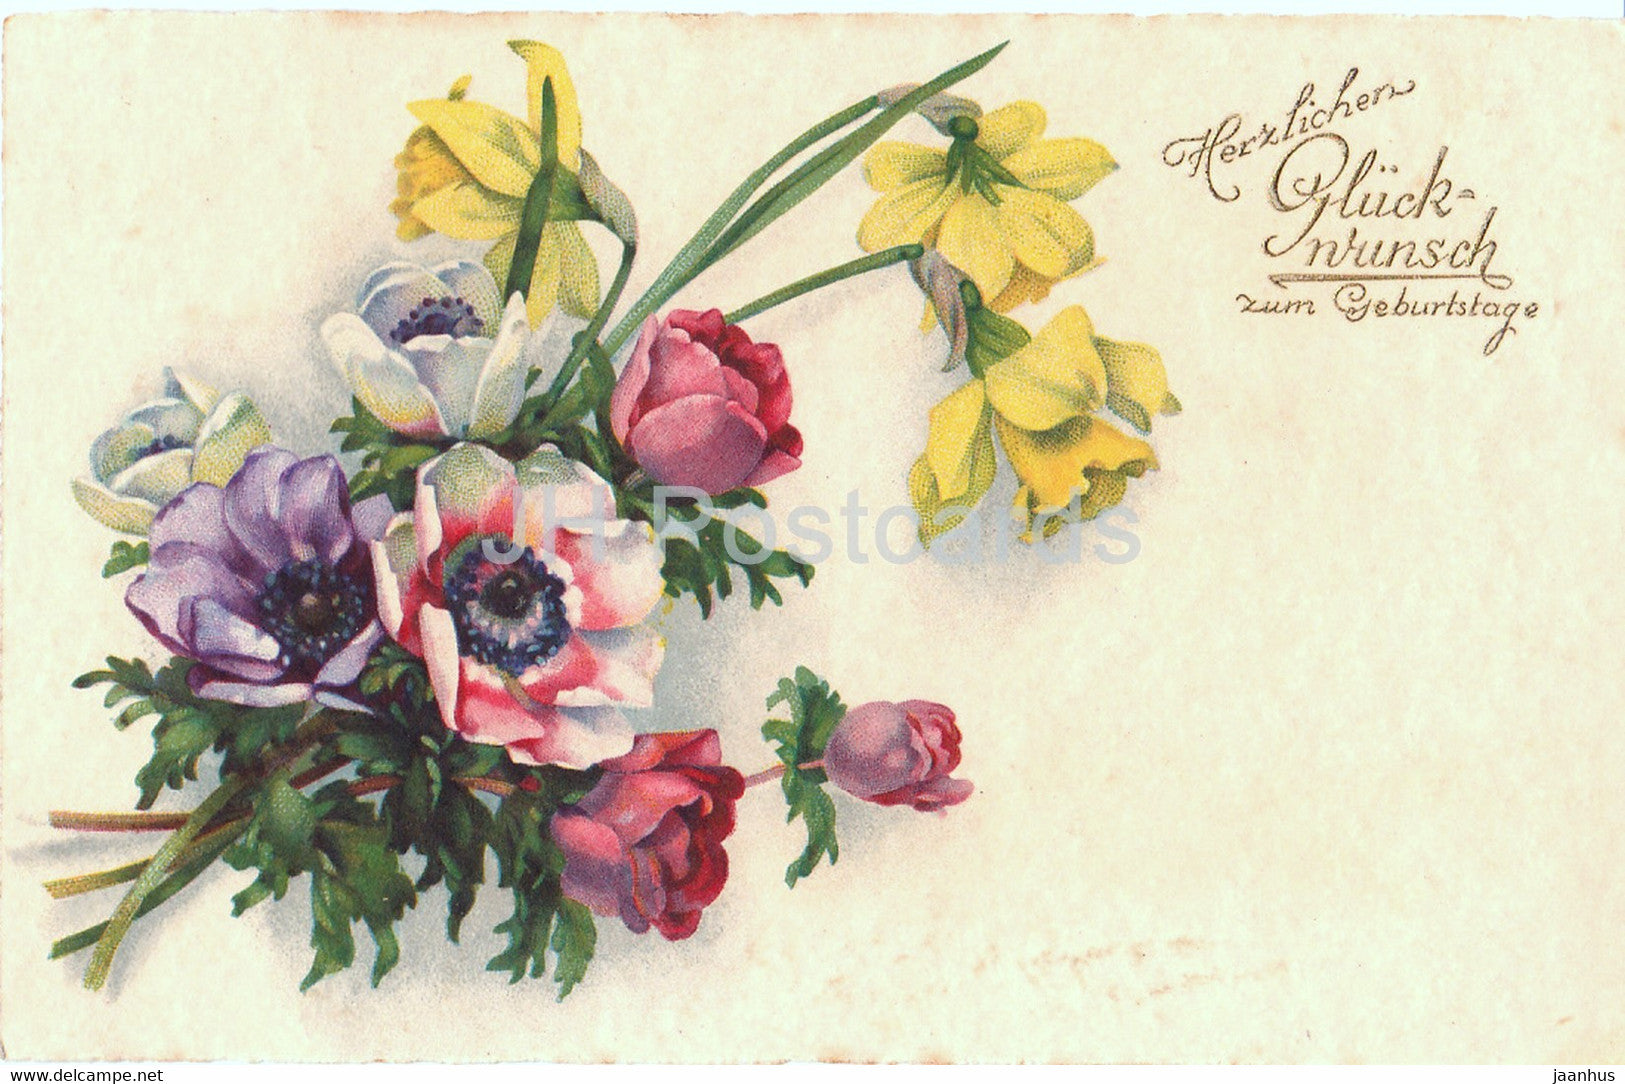 Birthday Greeting Card - Herzlichen Gluckwunsch zum Geburtstage - flowers - 3258 - old postcard - 1930 - Germany - used - JH Postcards